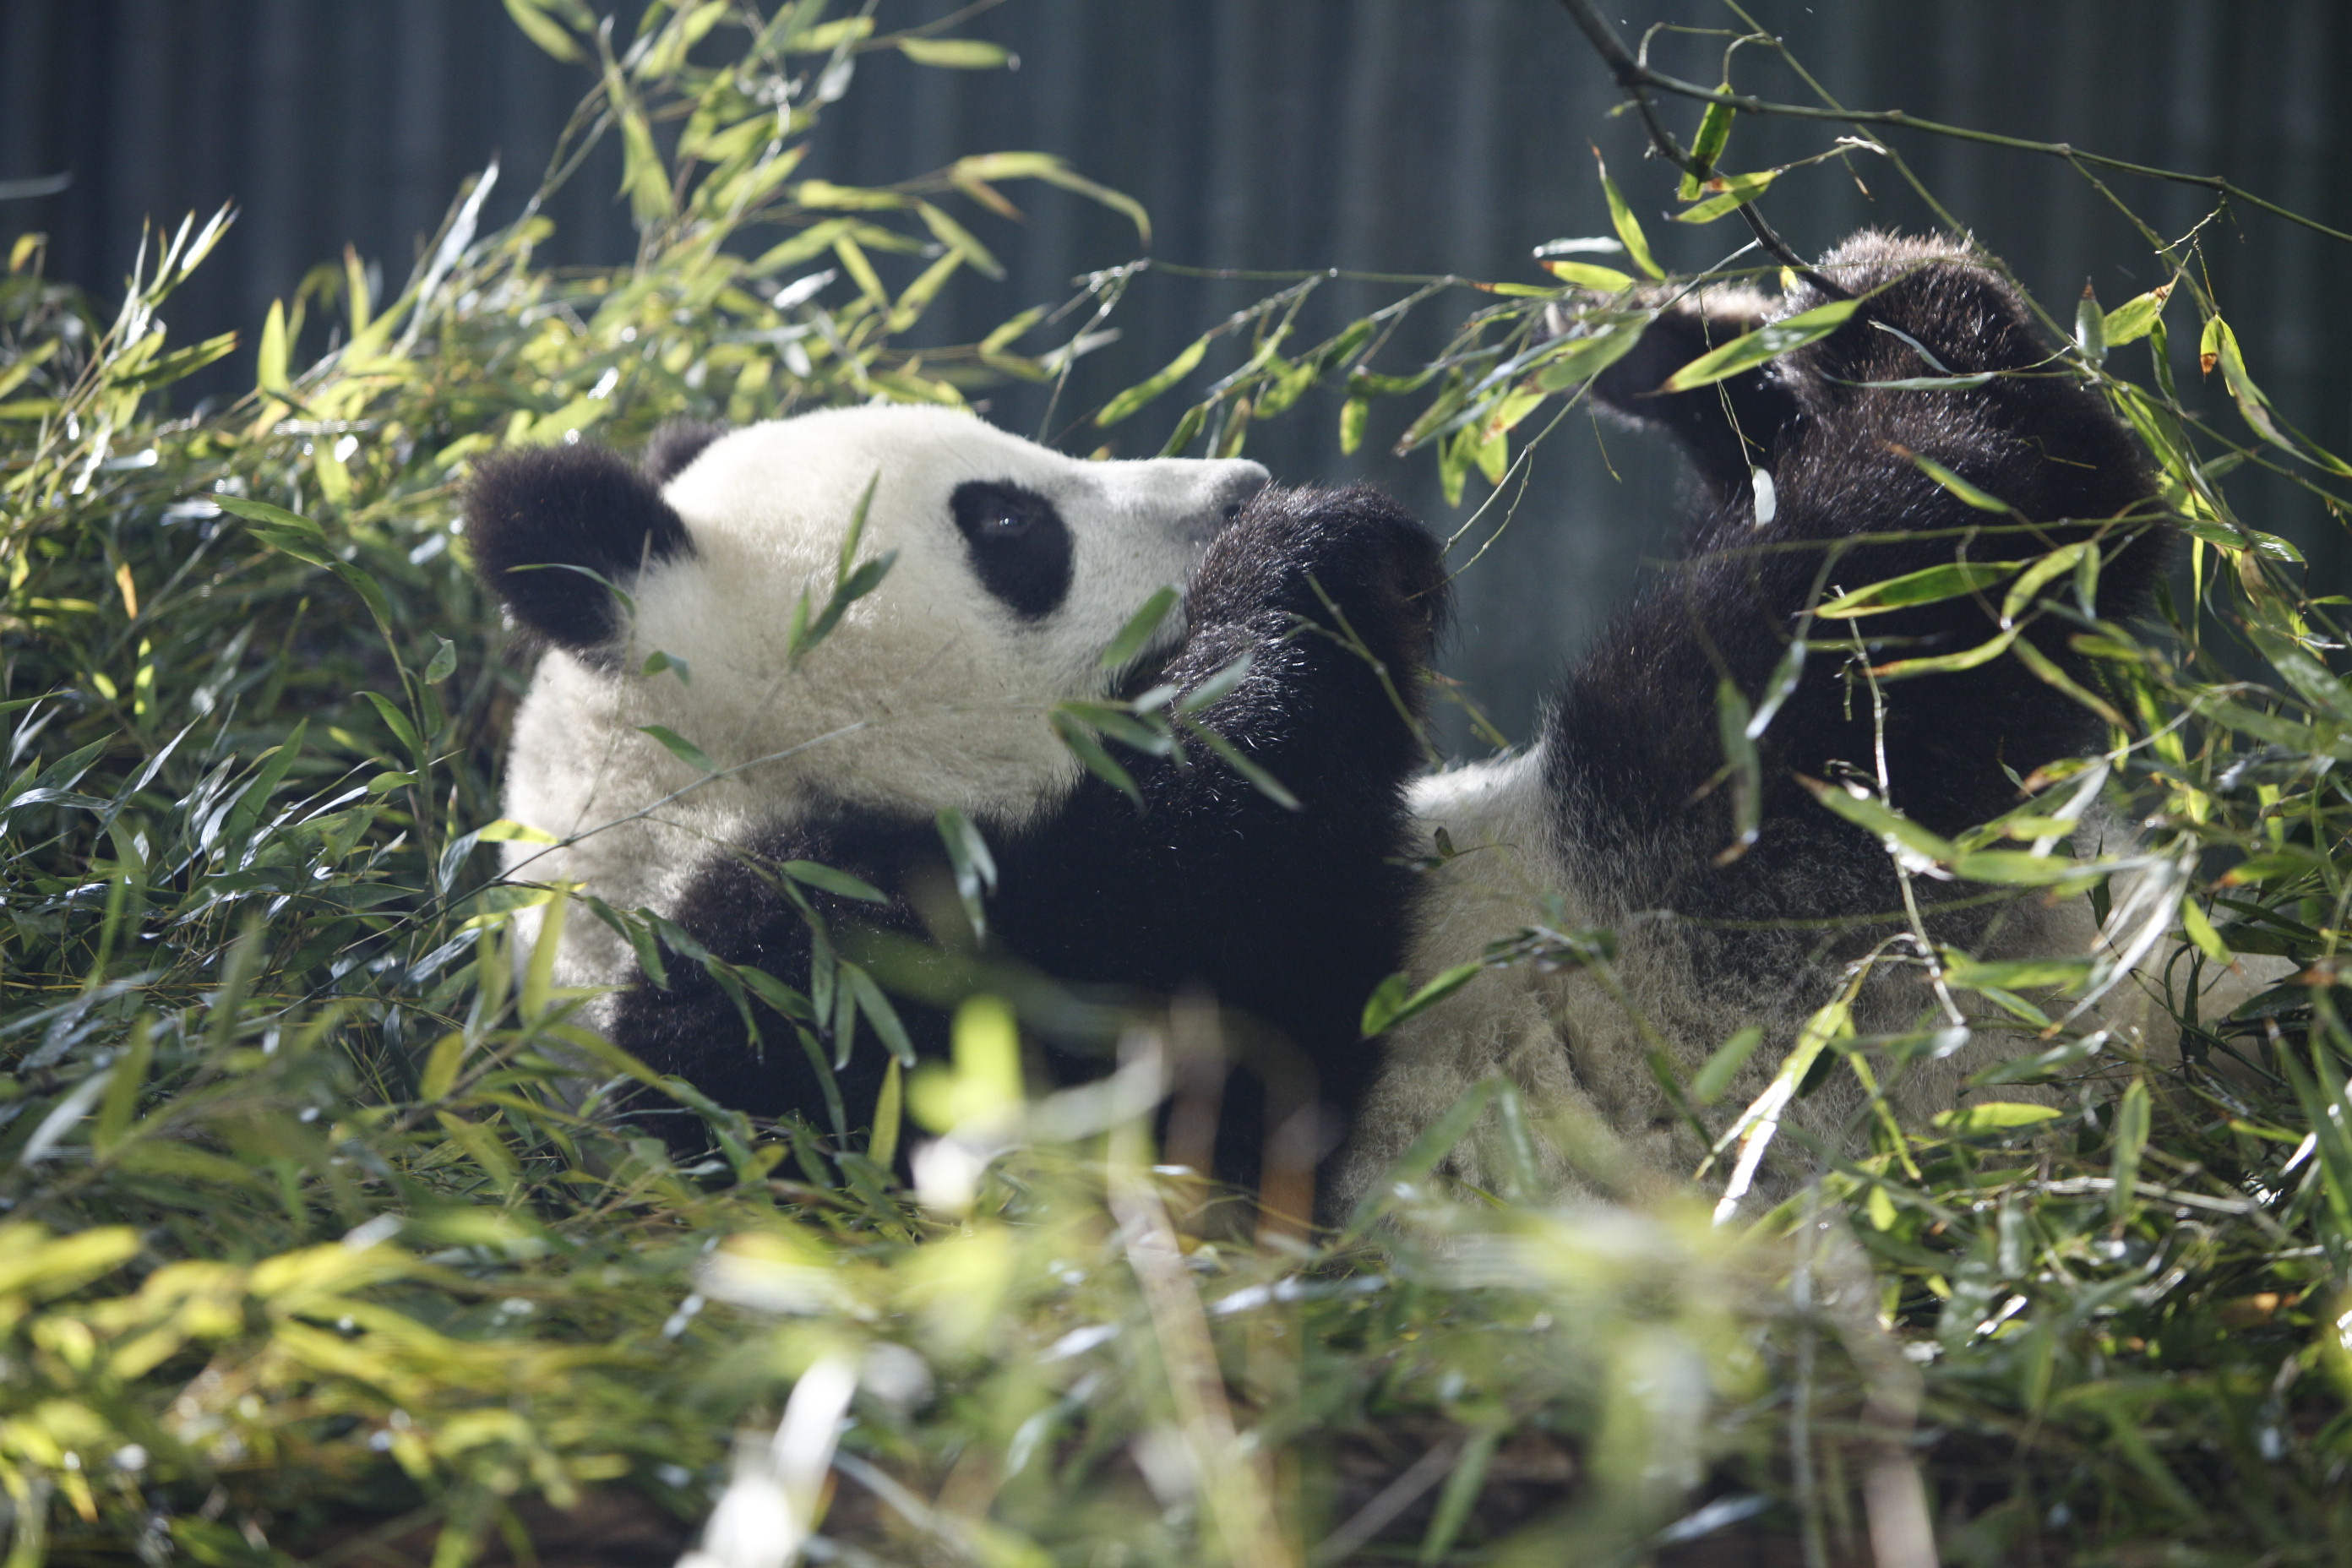 qq天团复出,大熊猫吃播,亚洲象训练…上海动物园推出4条动物特色游